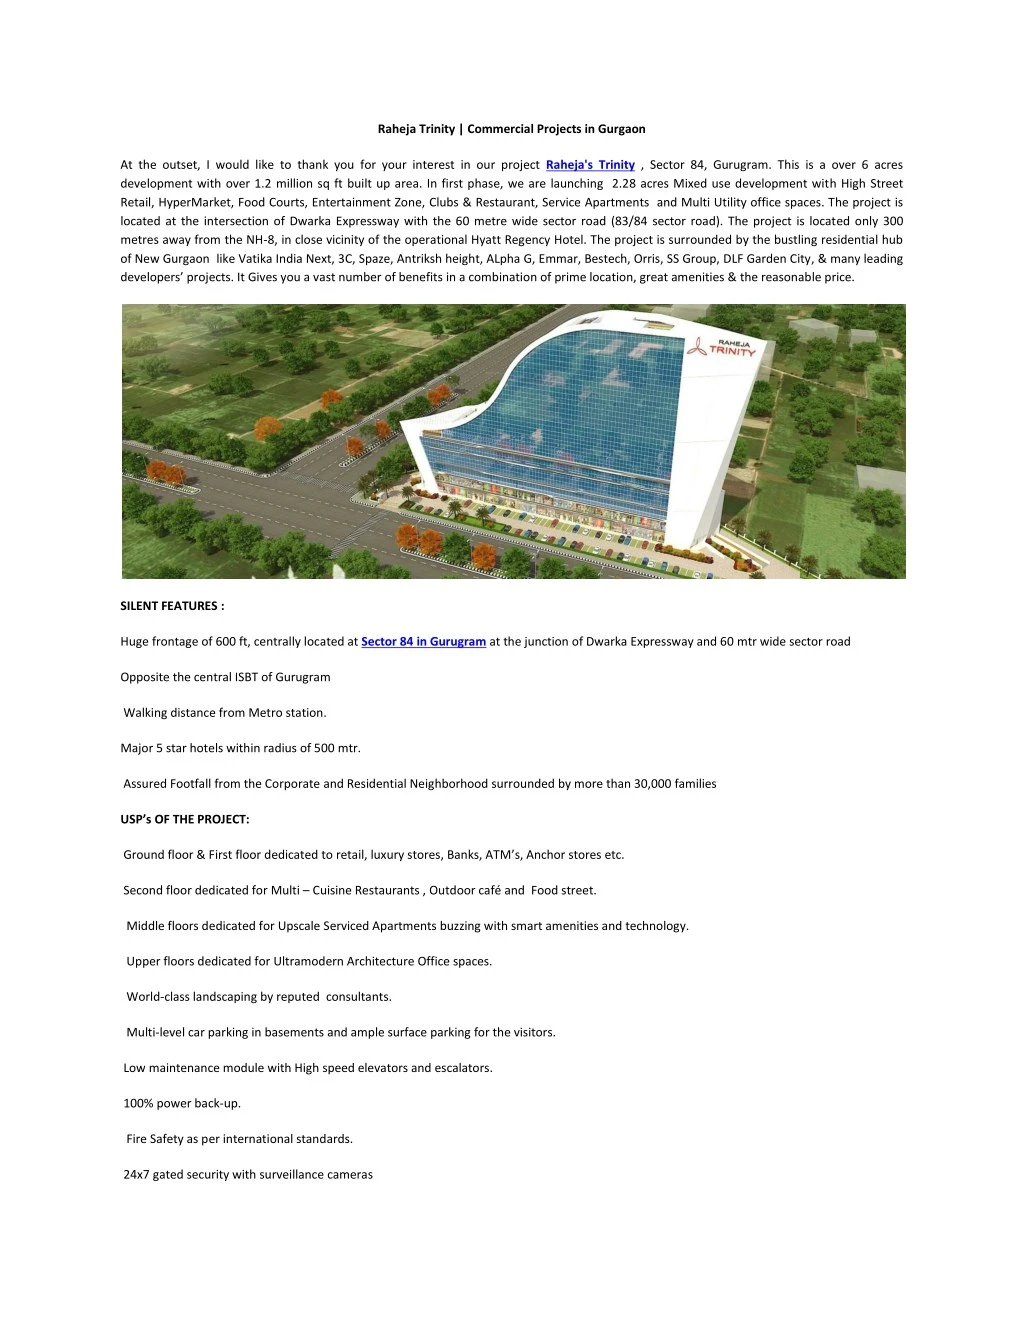 raheja trinity commercial projects in gurgaon